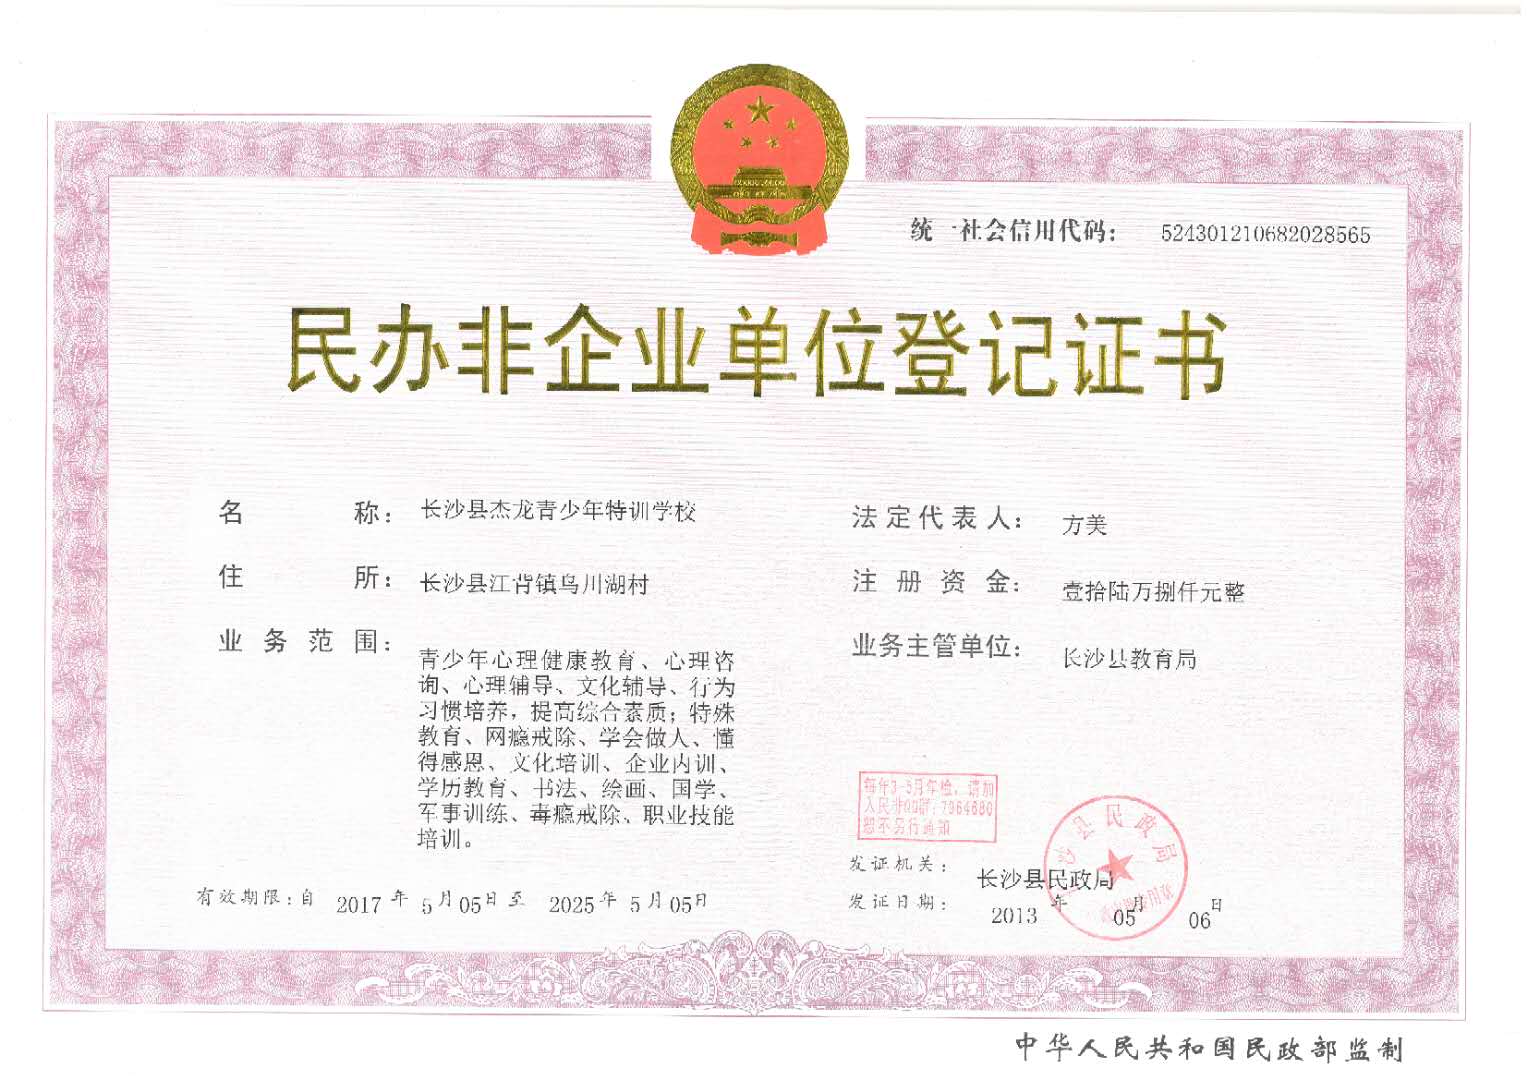 长沙县杰龙青少年特训学校民办非企业单位登记证